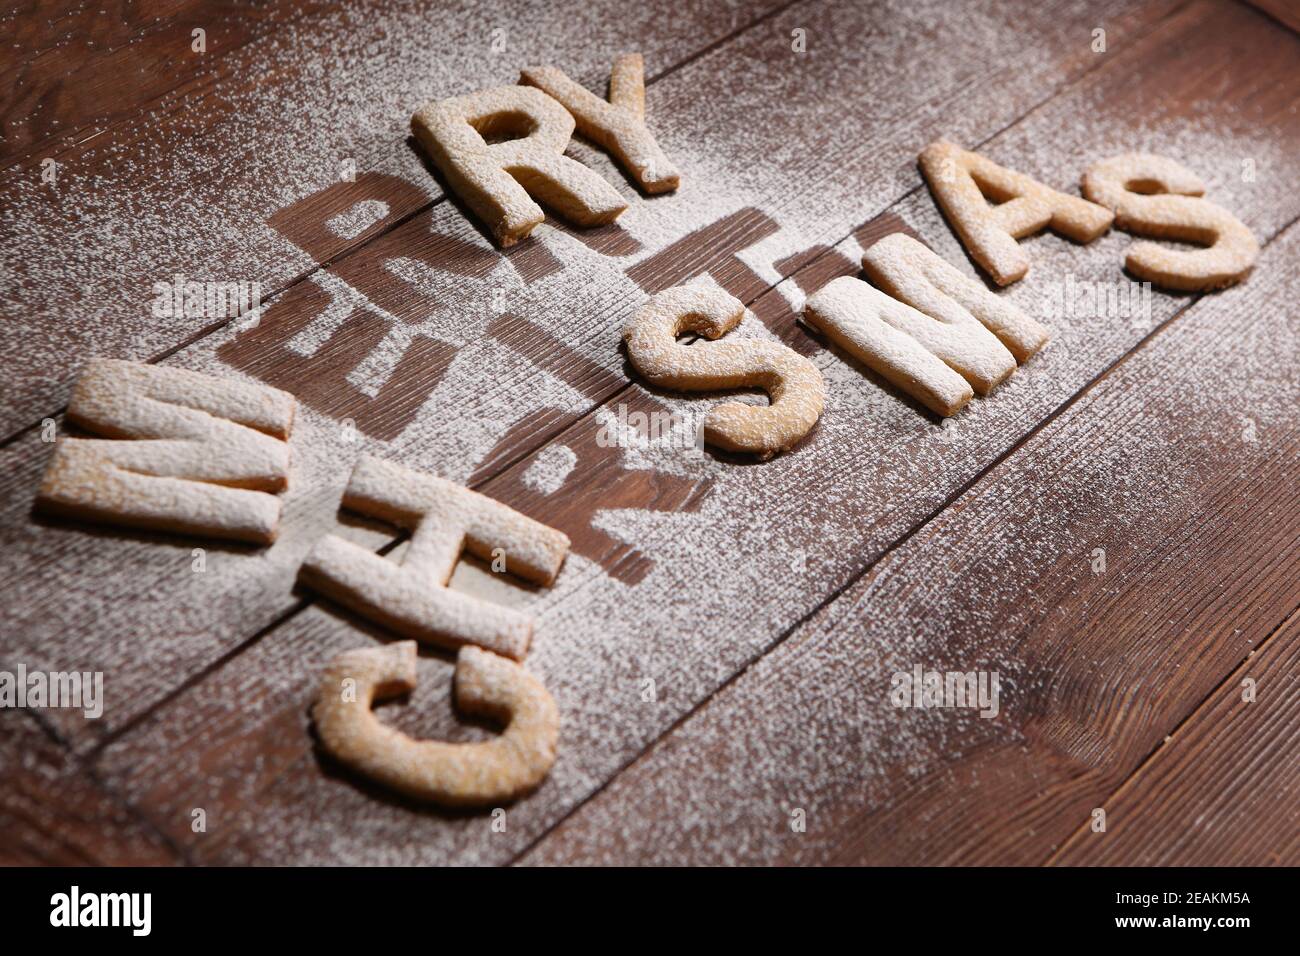 L'inscription merry Christmas-cookies sous forme de lettres faites de pâte de gingembre. Biscuit au gingembre. Travail fait à la main. Imprimer sur un arrière-plan en bois. Le concept de la célébration. Noël ou nouvel an. Banque D'Images